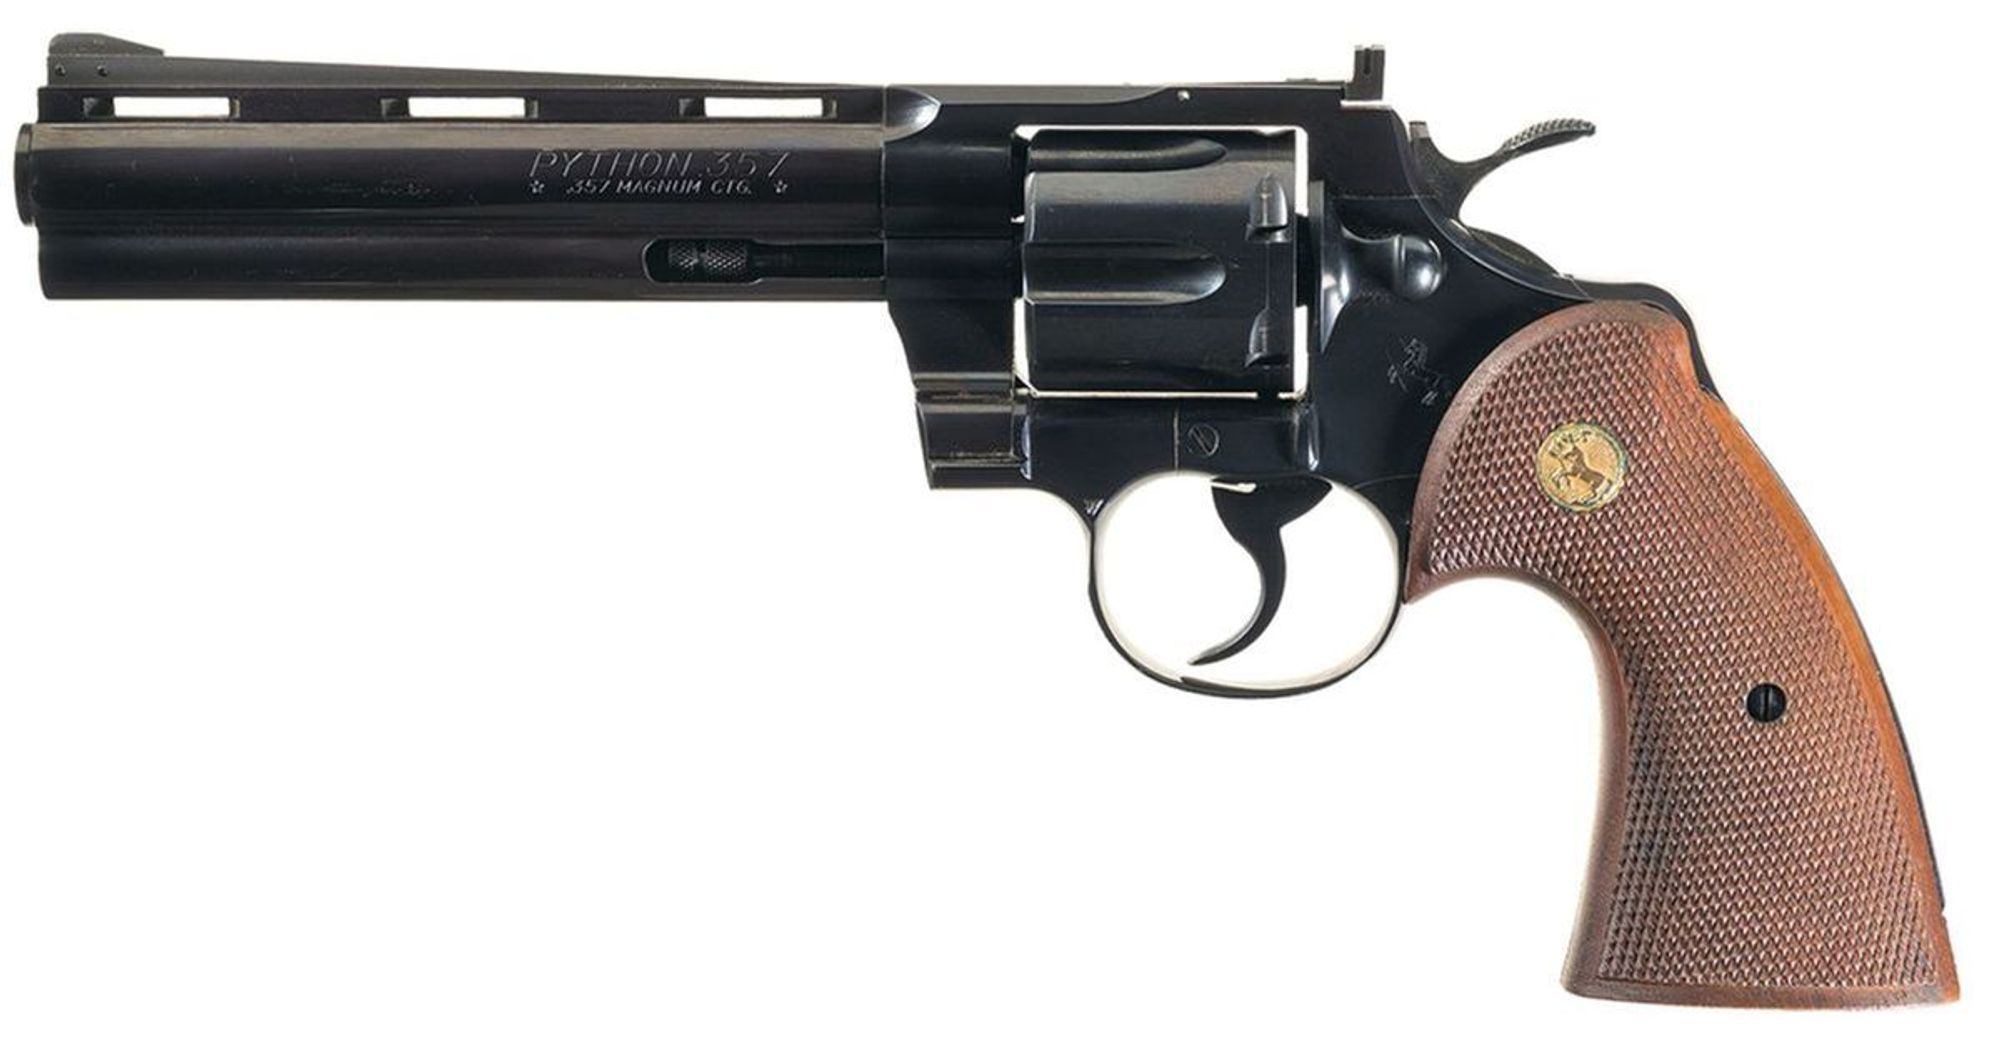 Colt Python 357 Caliber